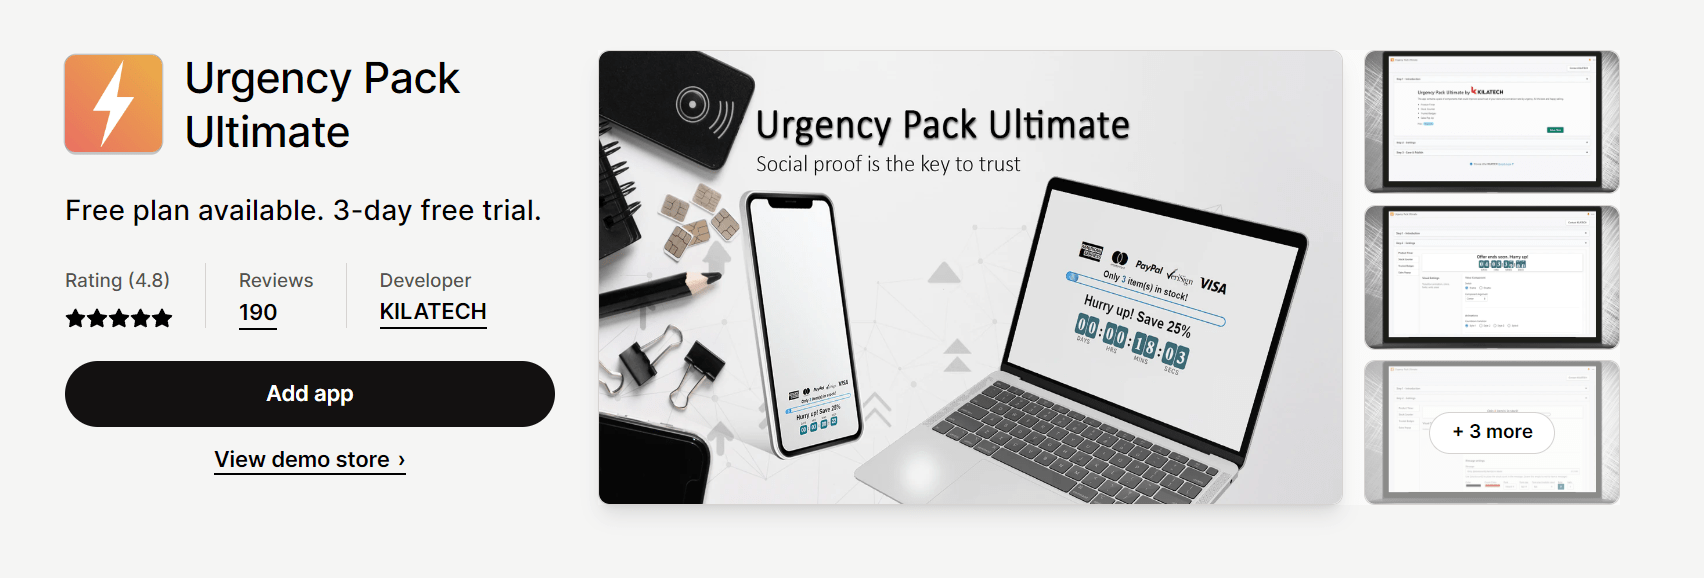 Urgency Pack Ultimate